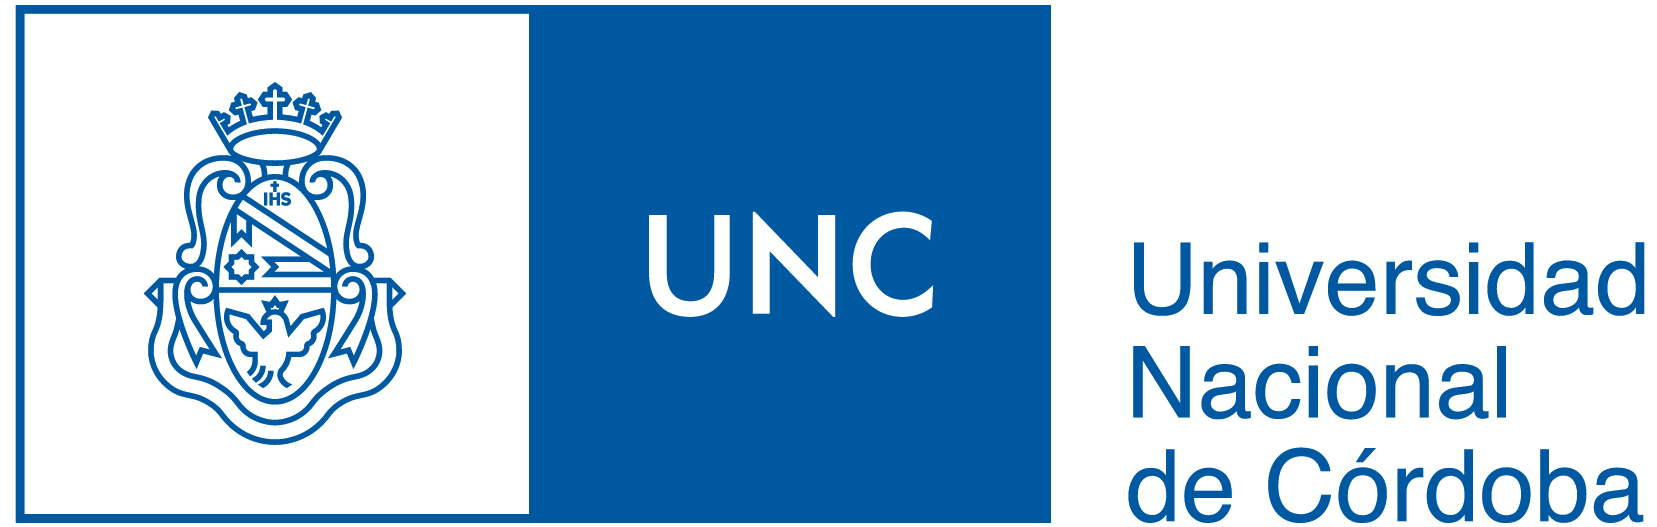 Versiones descargables del escudo de la UNC | Universidad Nacional de Córdoba